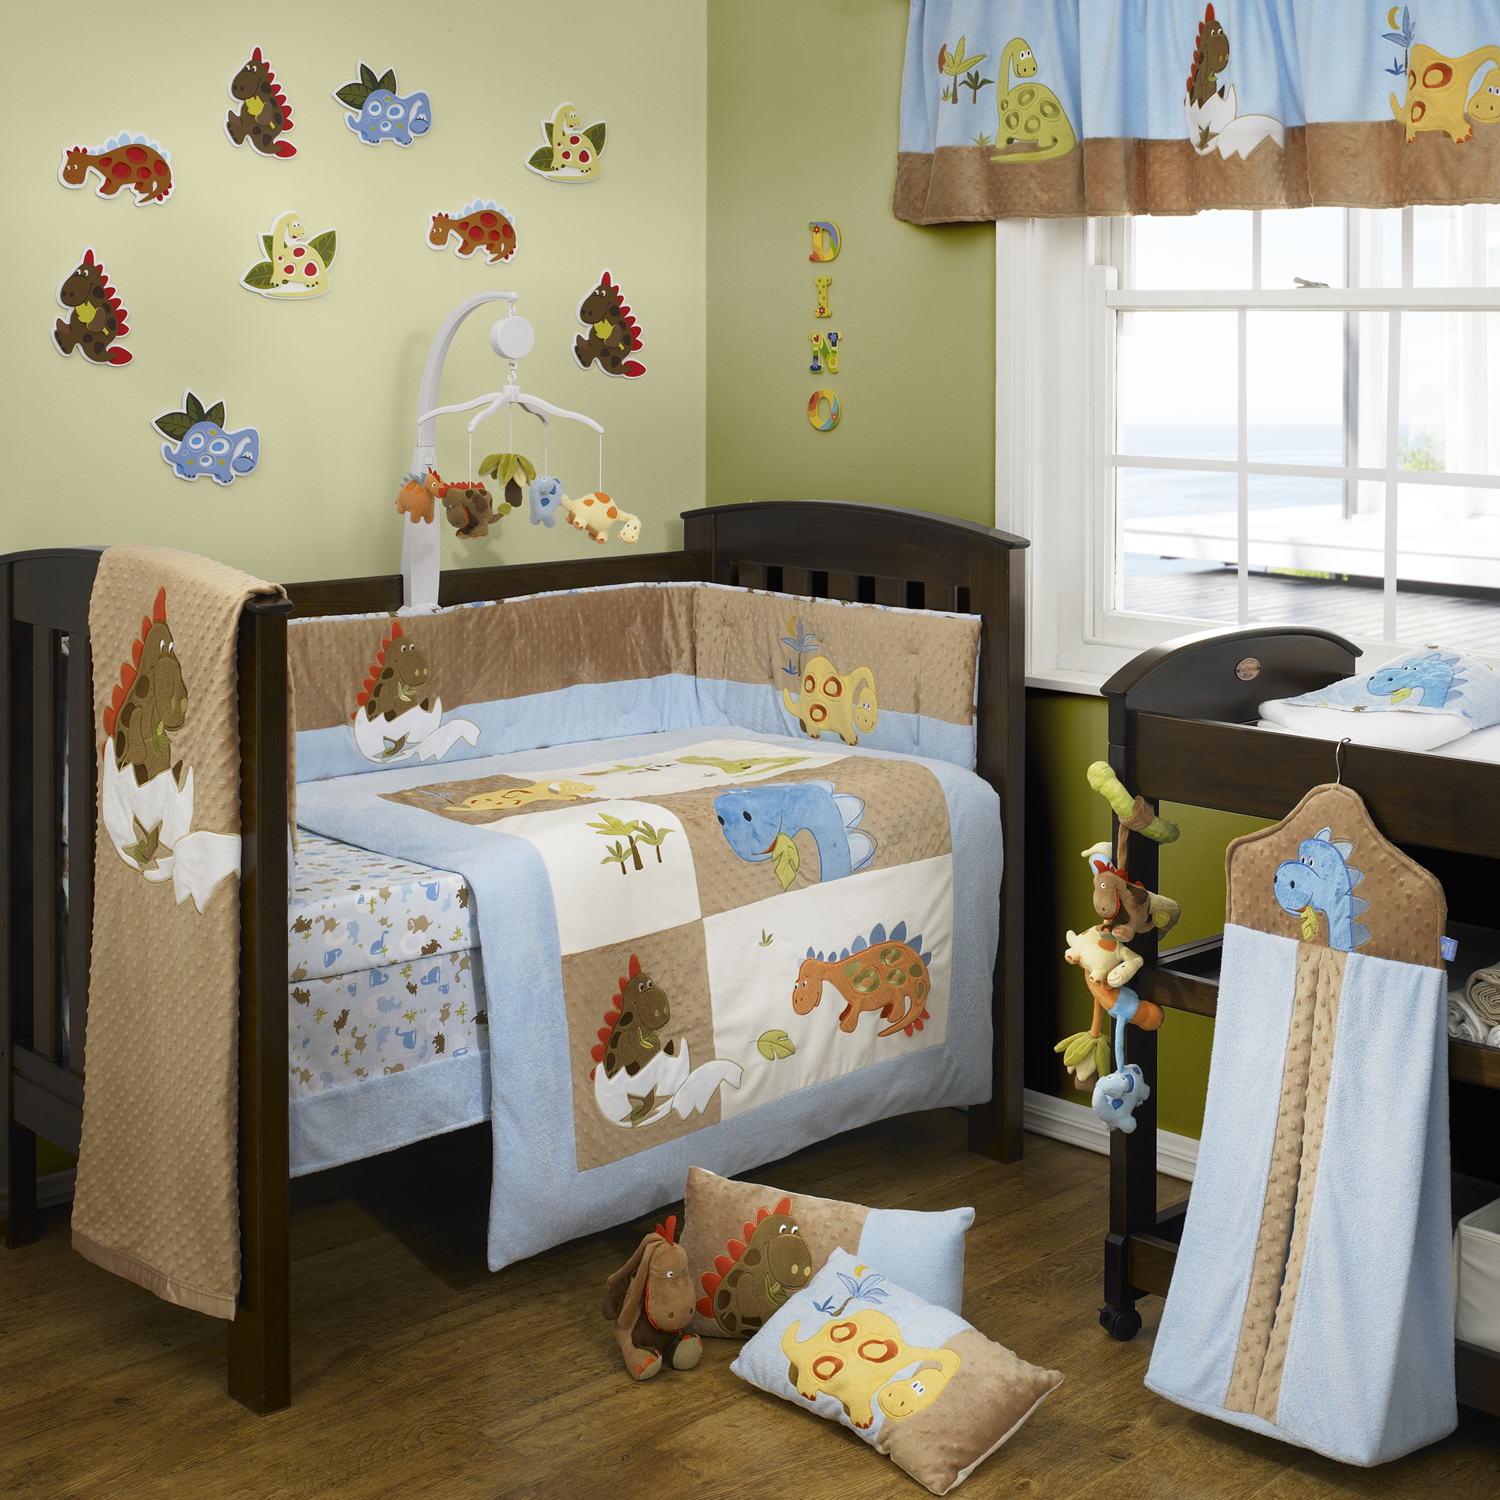 papel pintado de la habitación de los niños,producto,cama,mueble,habitación,cama infantil